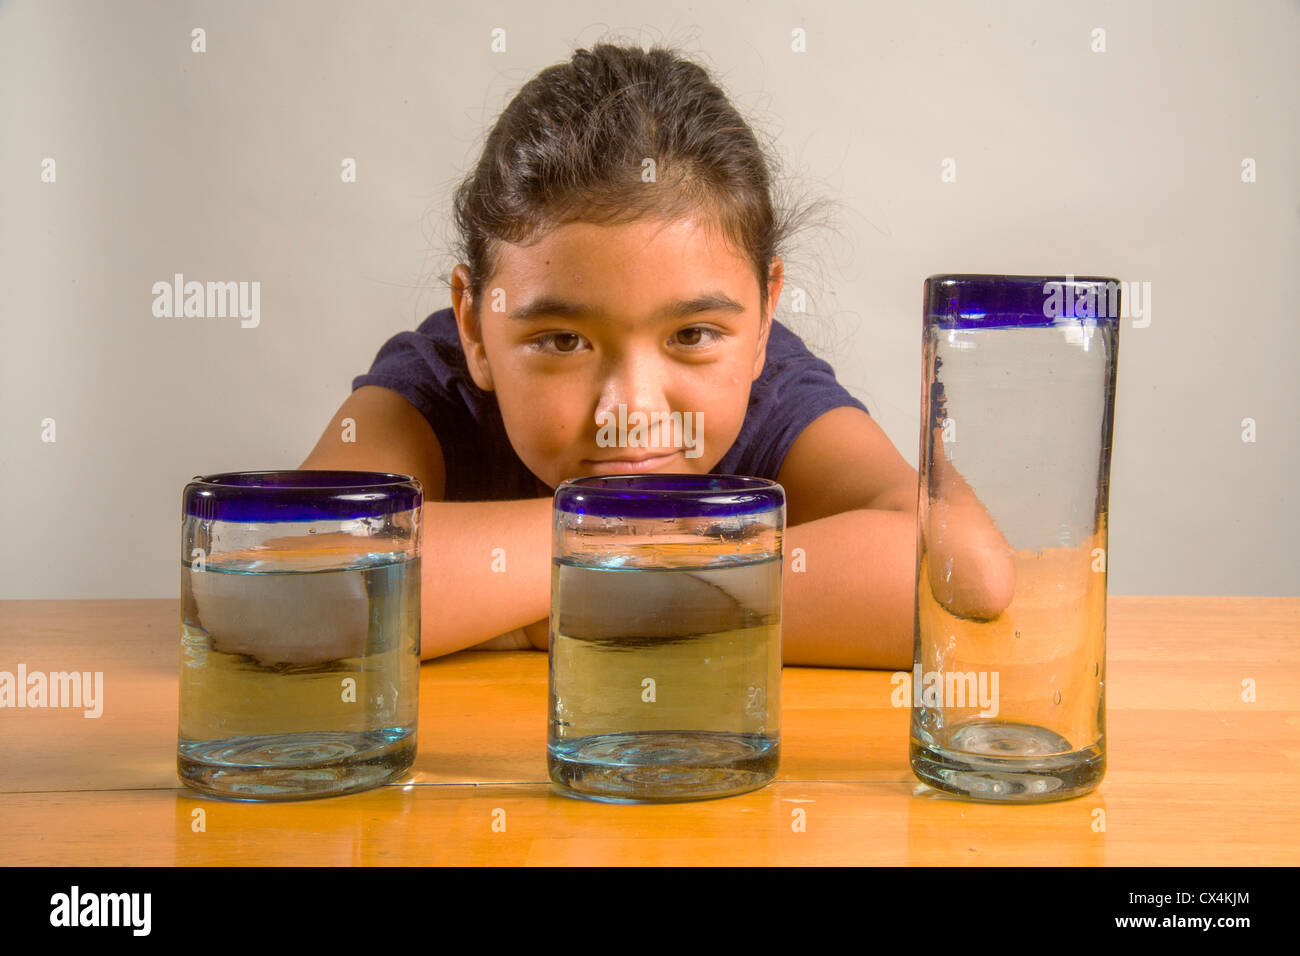 Un enfant regarde verres identiques remplis de la même quantité de liquide à démontrer l'expérience de Piaget Conservation liquide. Banque D'Images